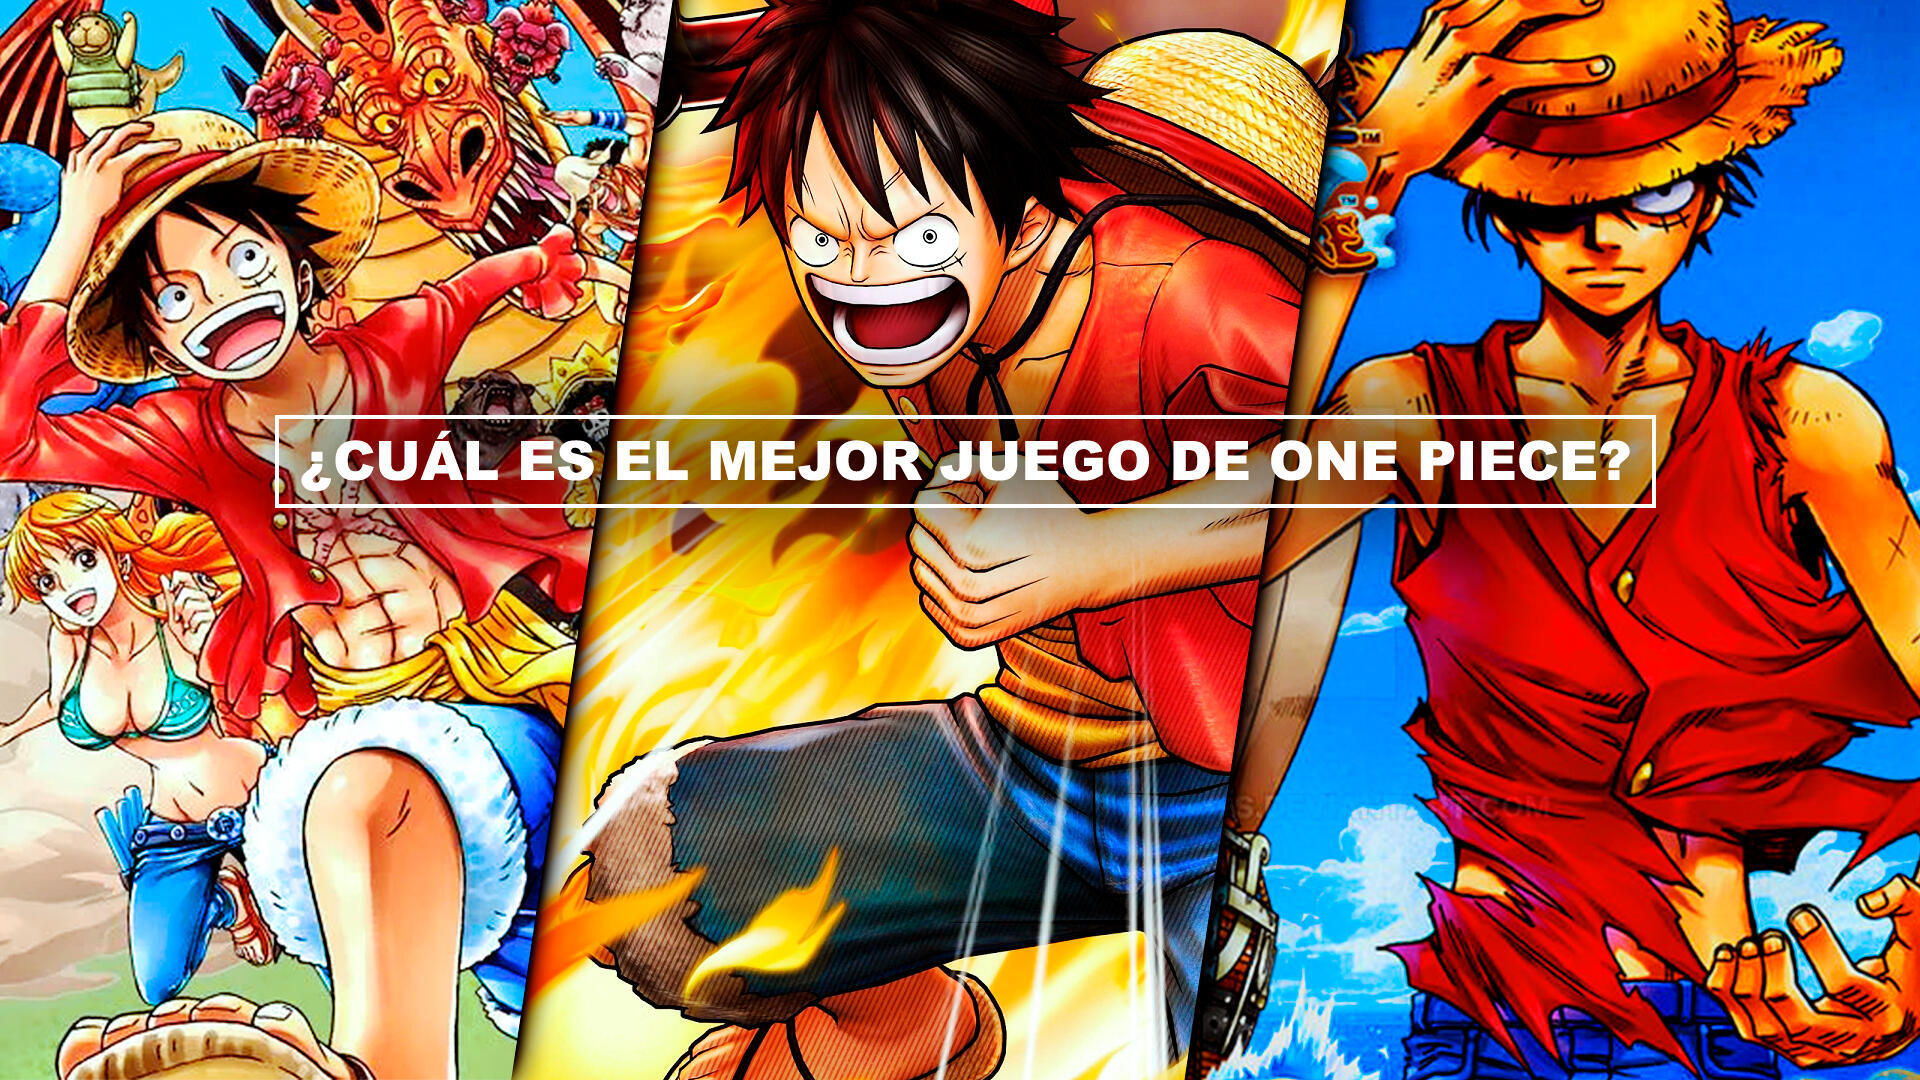 Cul es el mejor juego de One Piece? - TOP 10